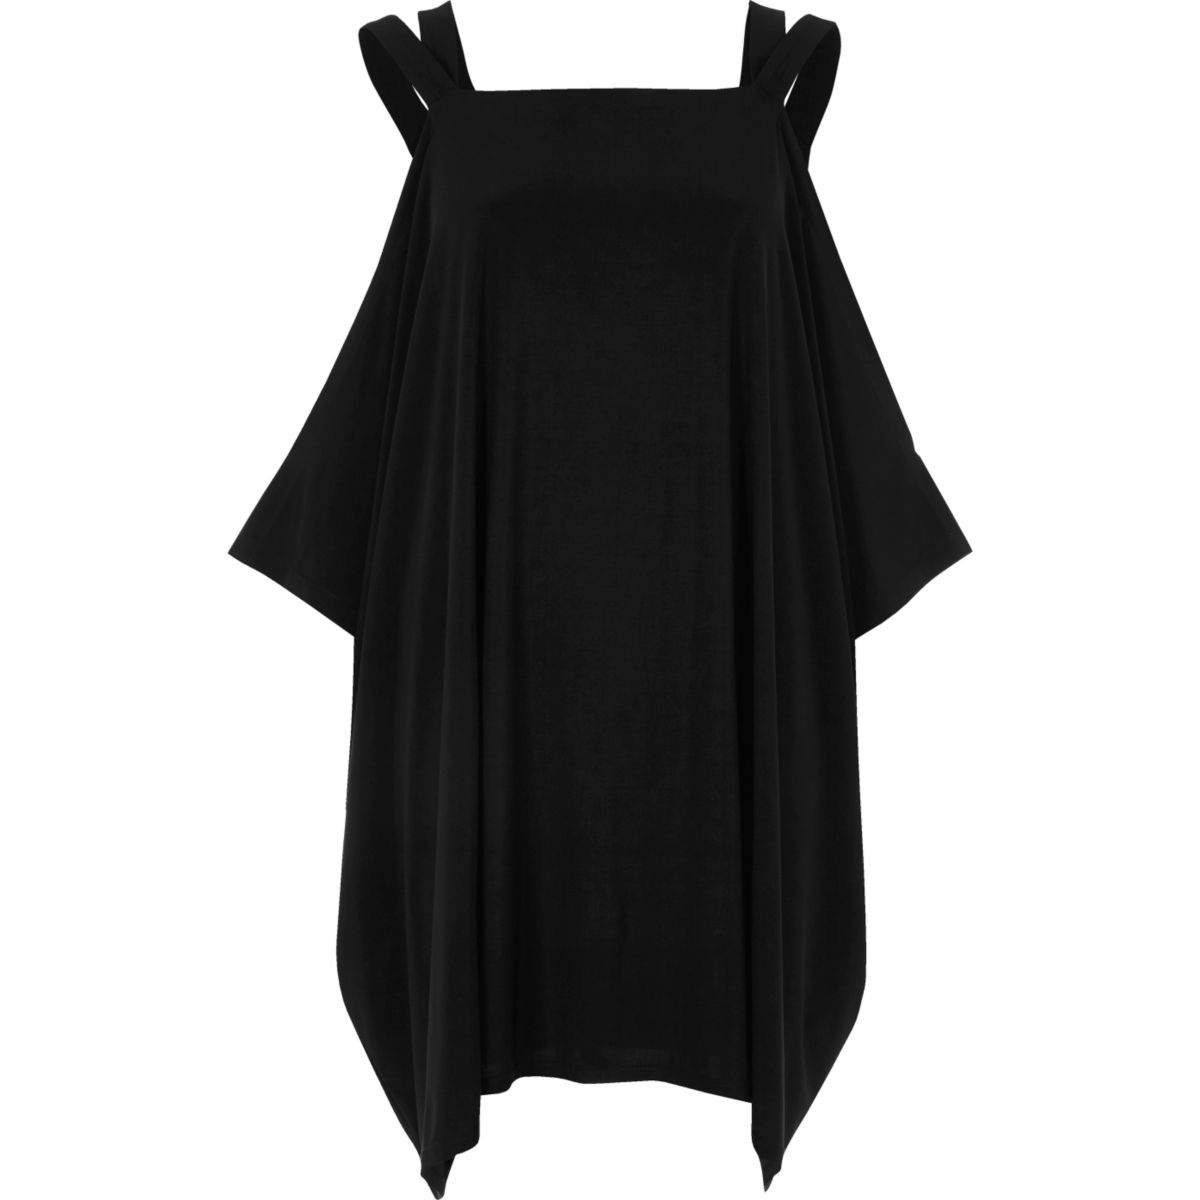 Black cold shoulder trapeze dress - Dresses - Sale - women